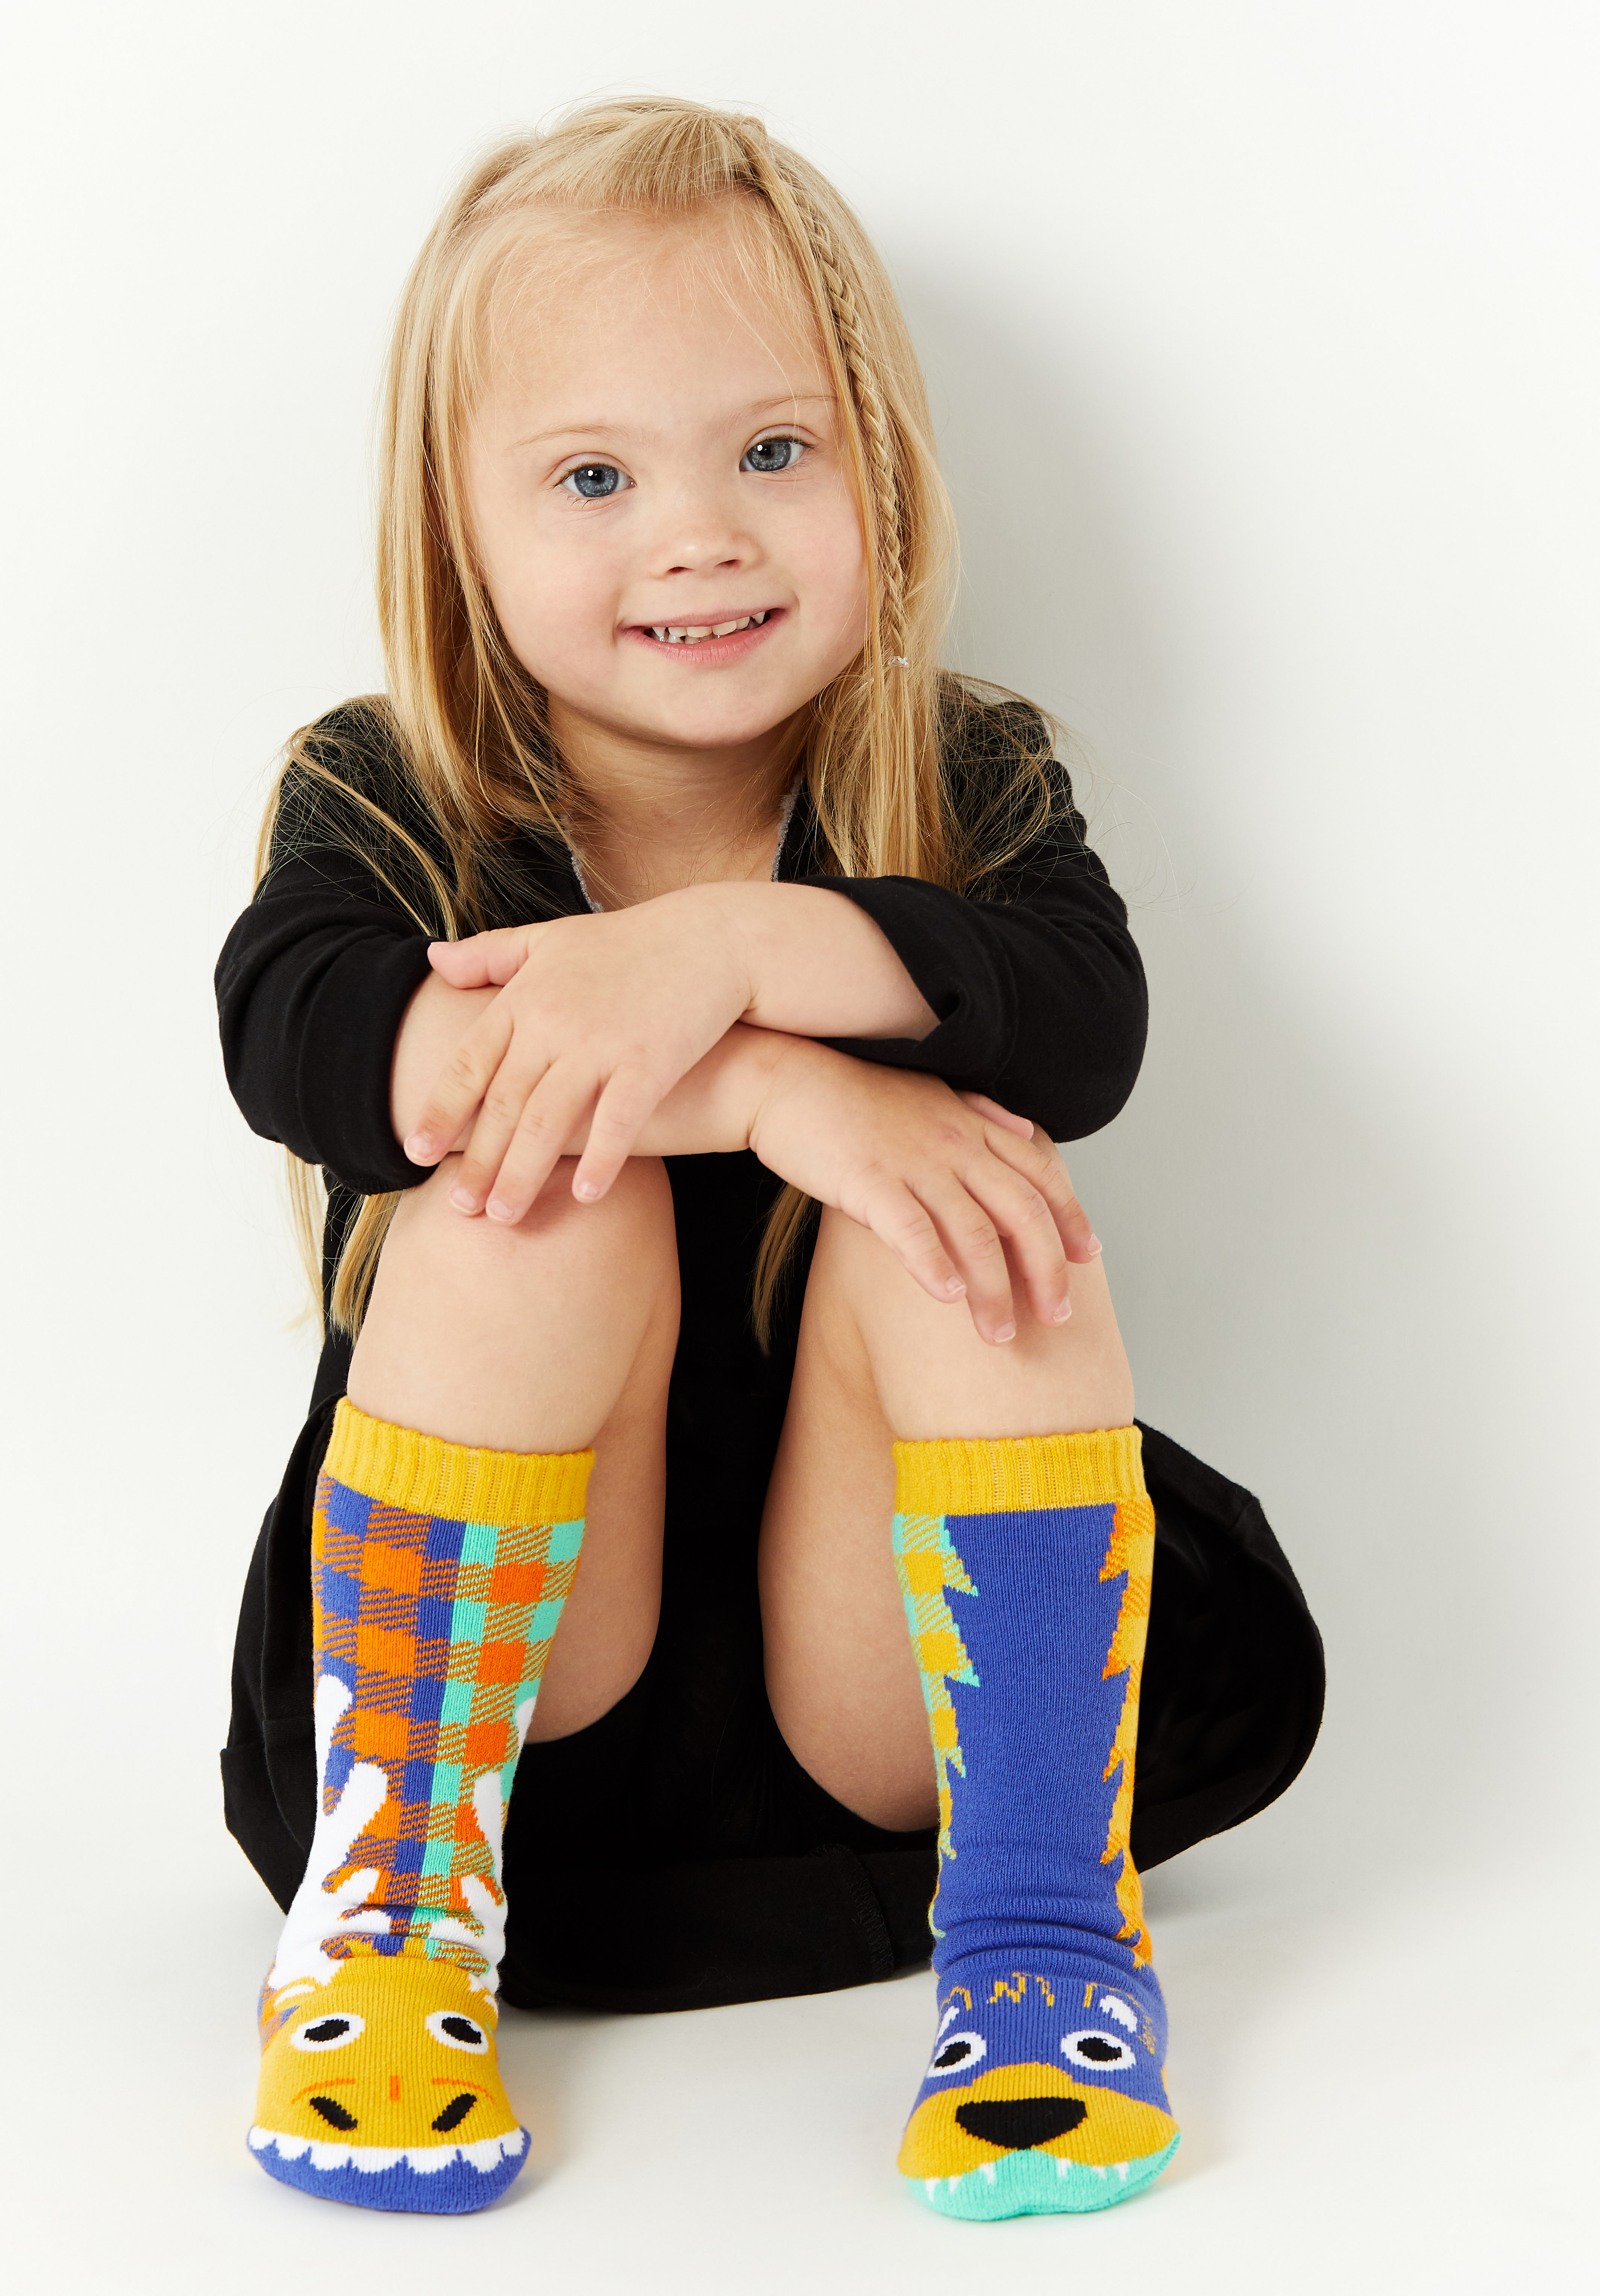 Farah's daughter wearing colorful socks.